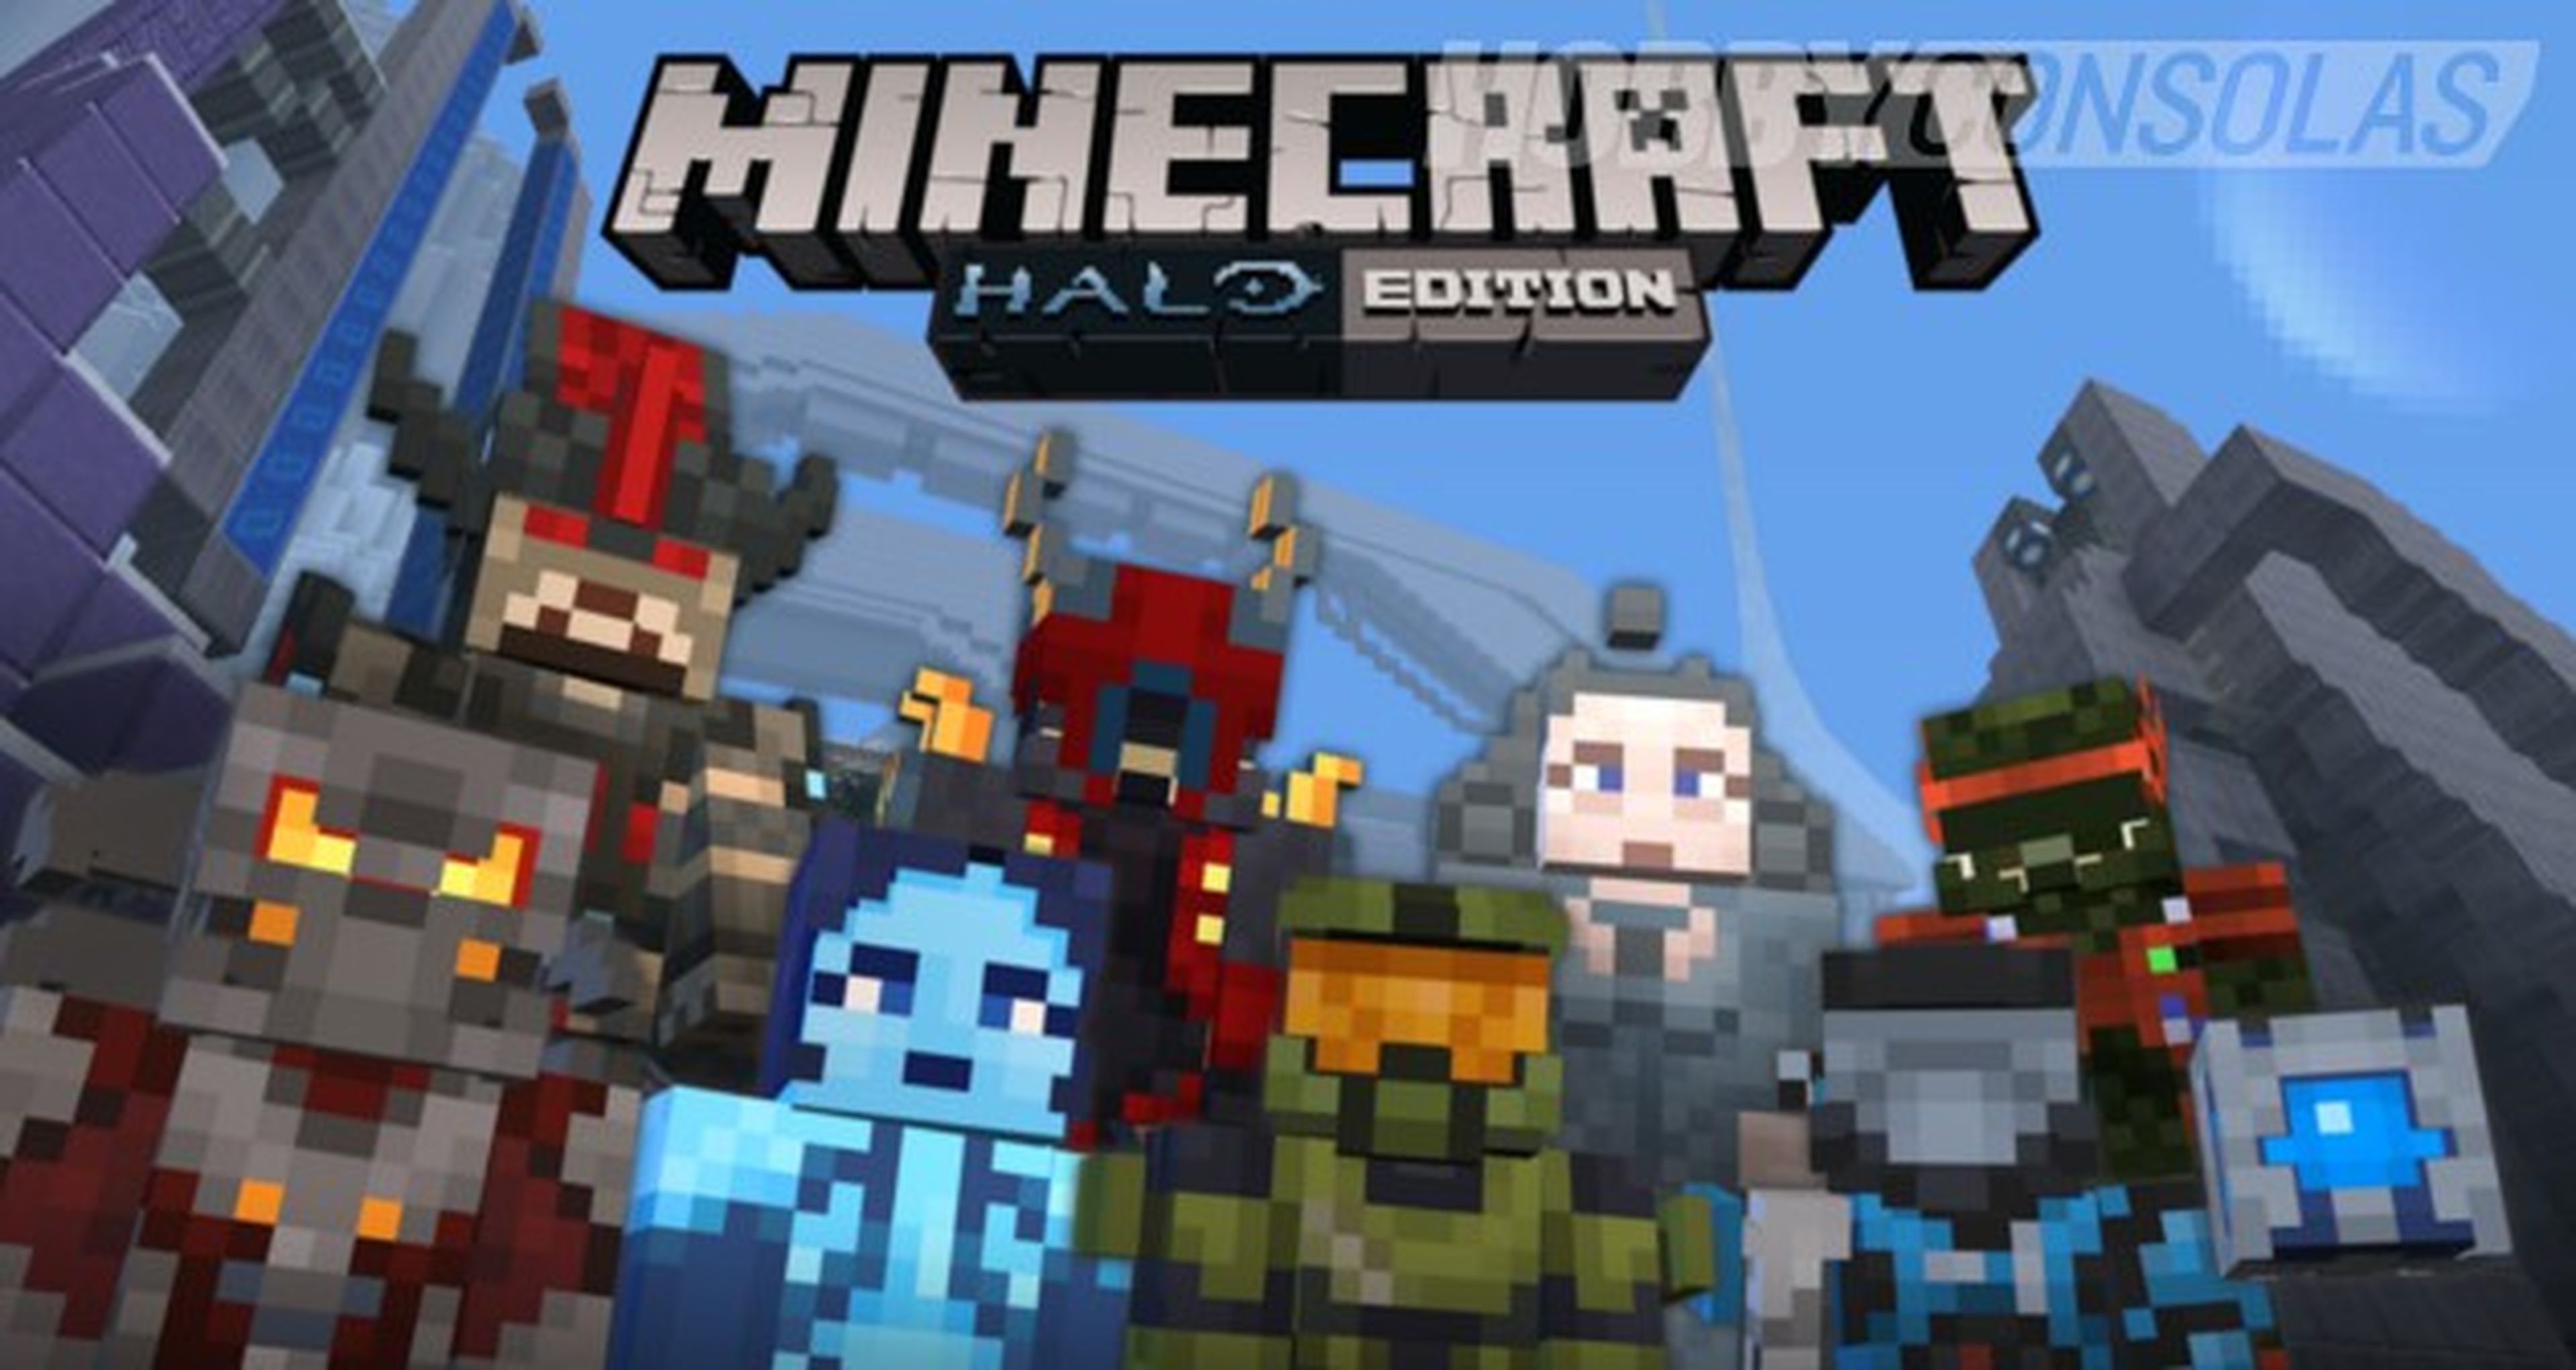 Microsoft compra Mojang (creadores de Minecraft) por 2.500 millones de dólares